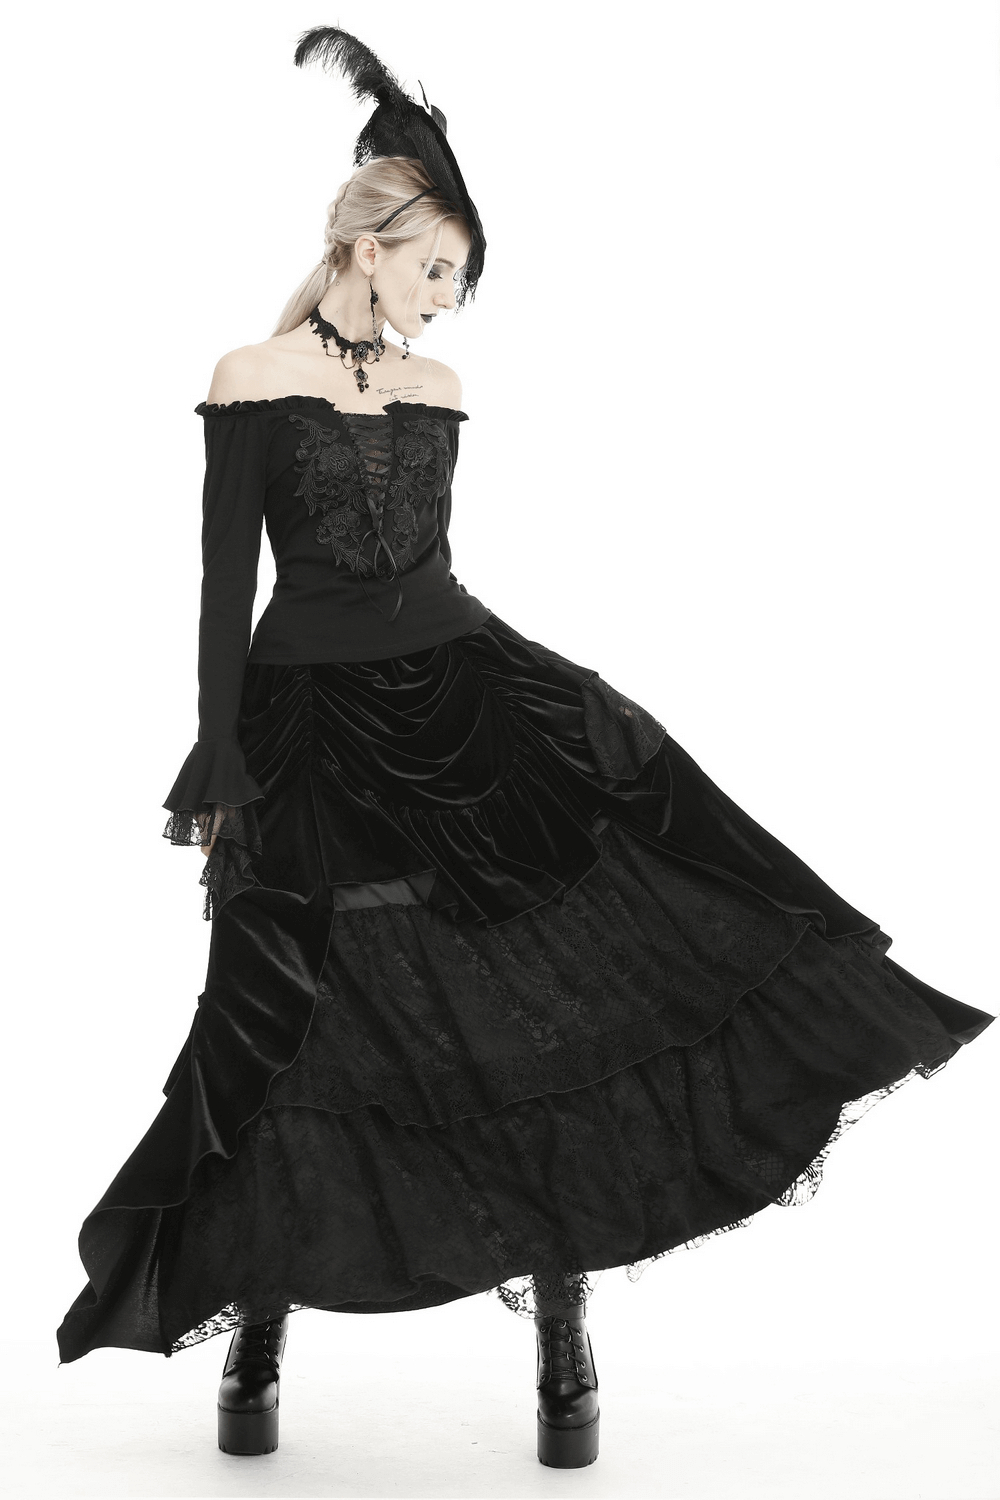 Elegant Gothic Black Velvet and Lace Long Skirt